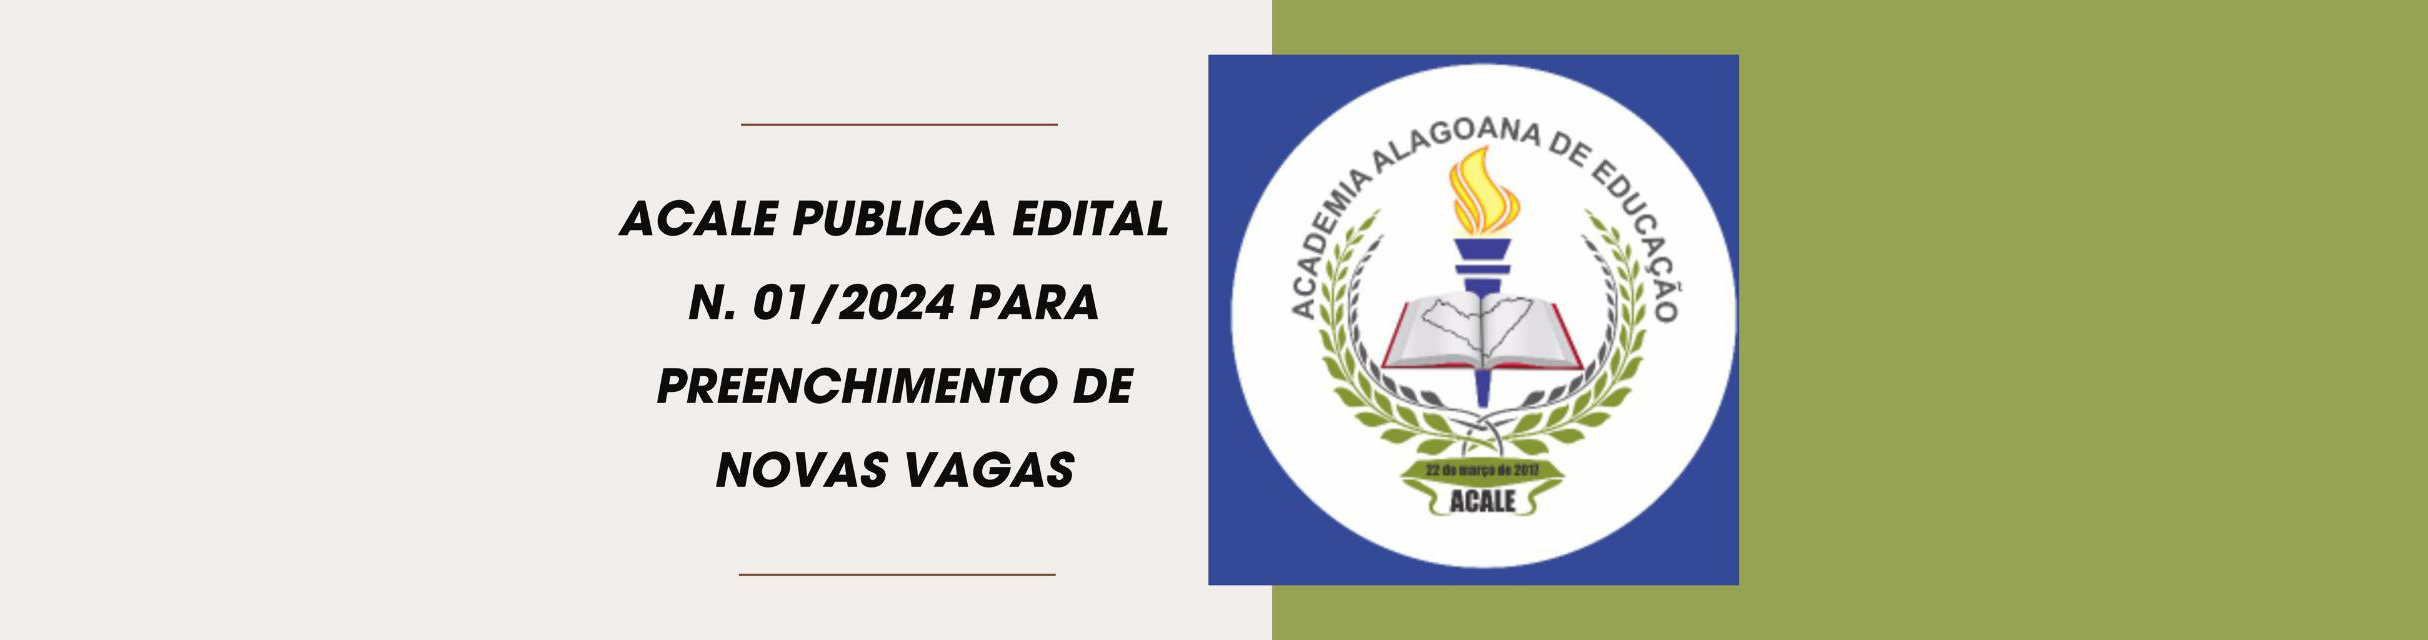 ACALE publica Edital nº 01/2024 para preenchimento de novas vagas